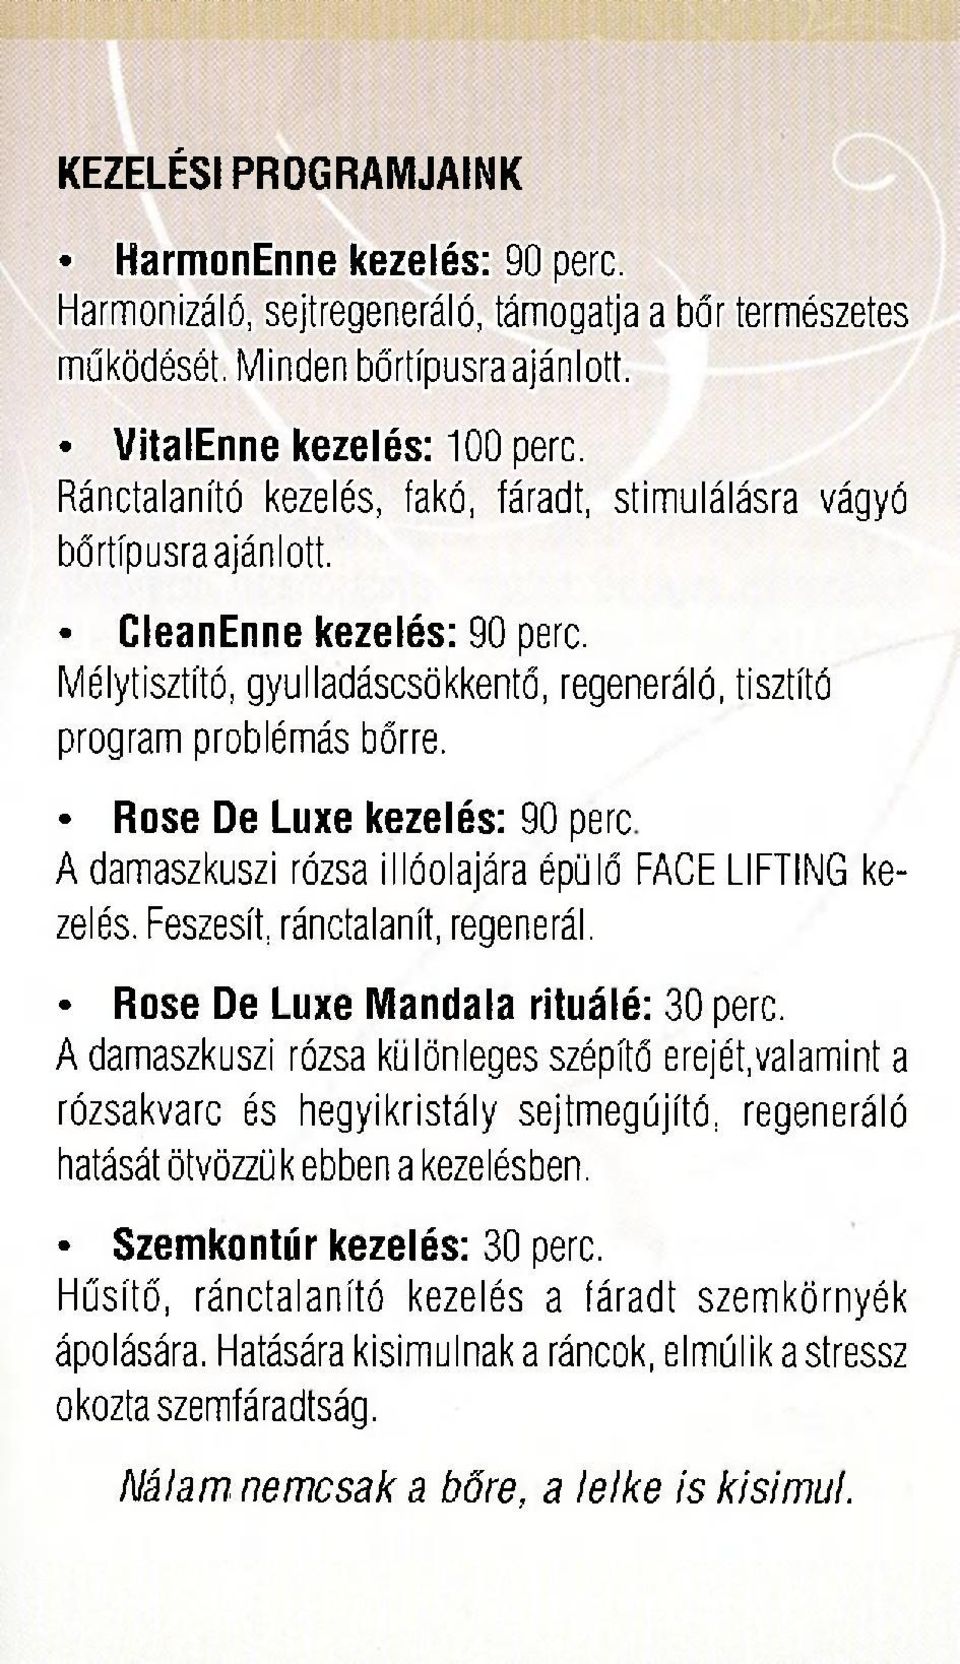 Rose De Luxe kezelés: 90 perc A damaszkuszi rózsa illóolajára épülő FACE LIFTING kezelés. Feszesít, ránctalanít, regenerál. Rose De Luxe Mandala rituálé: 30 perc.